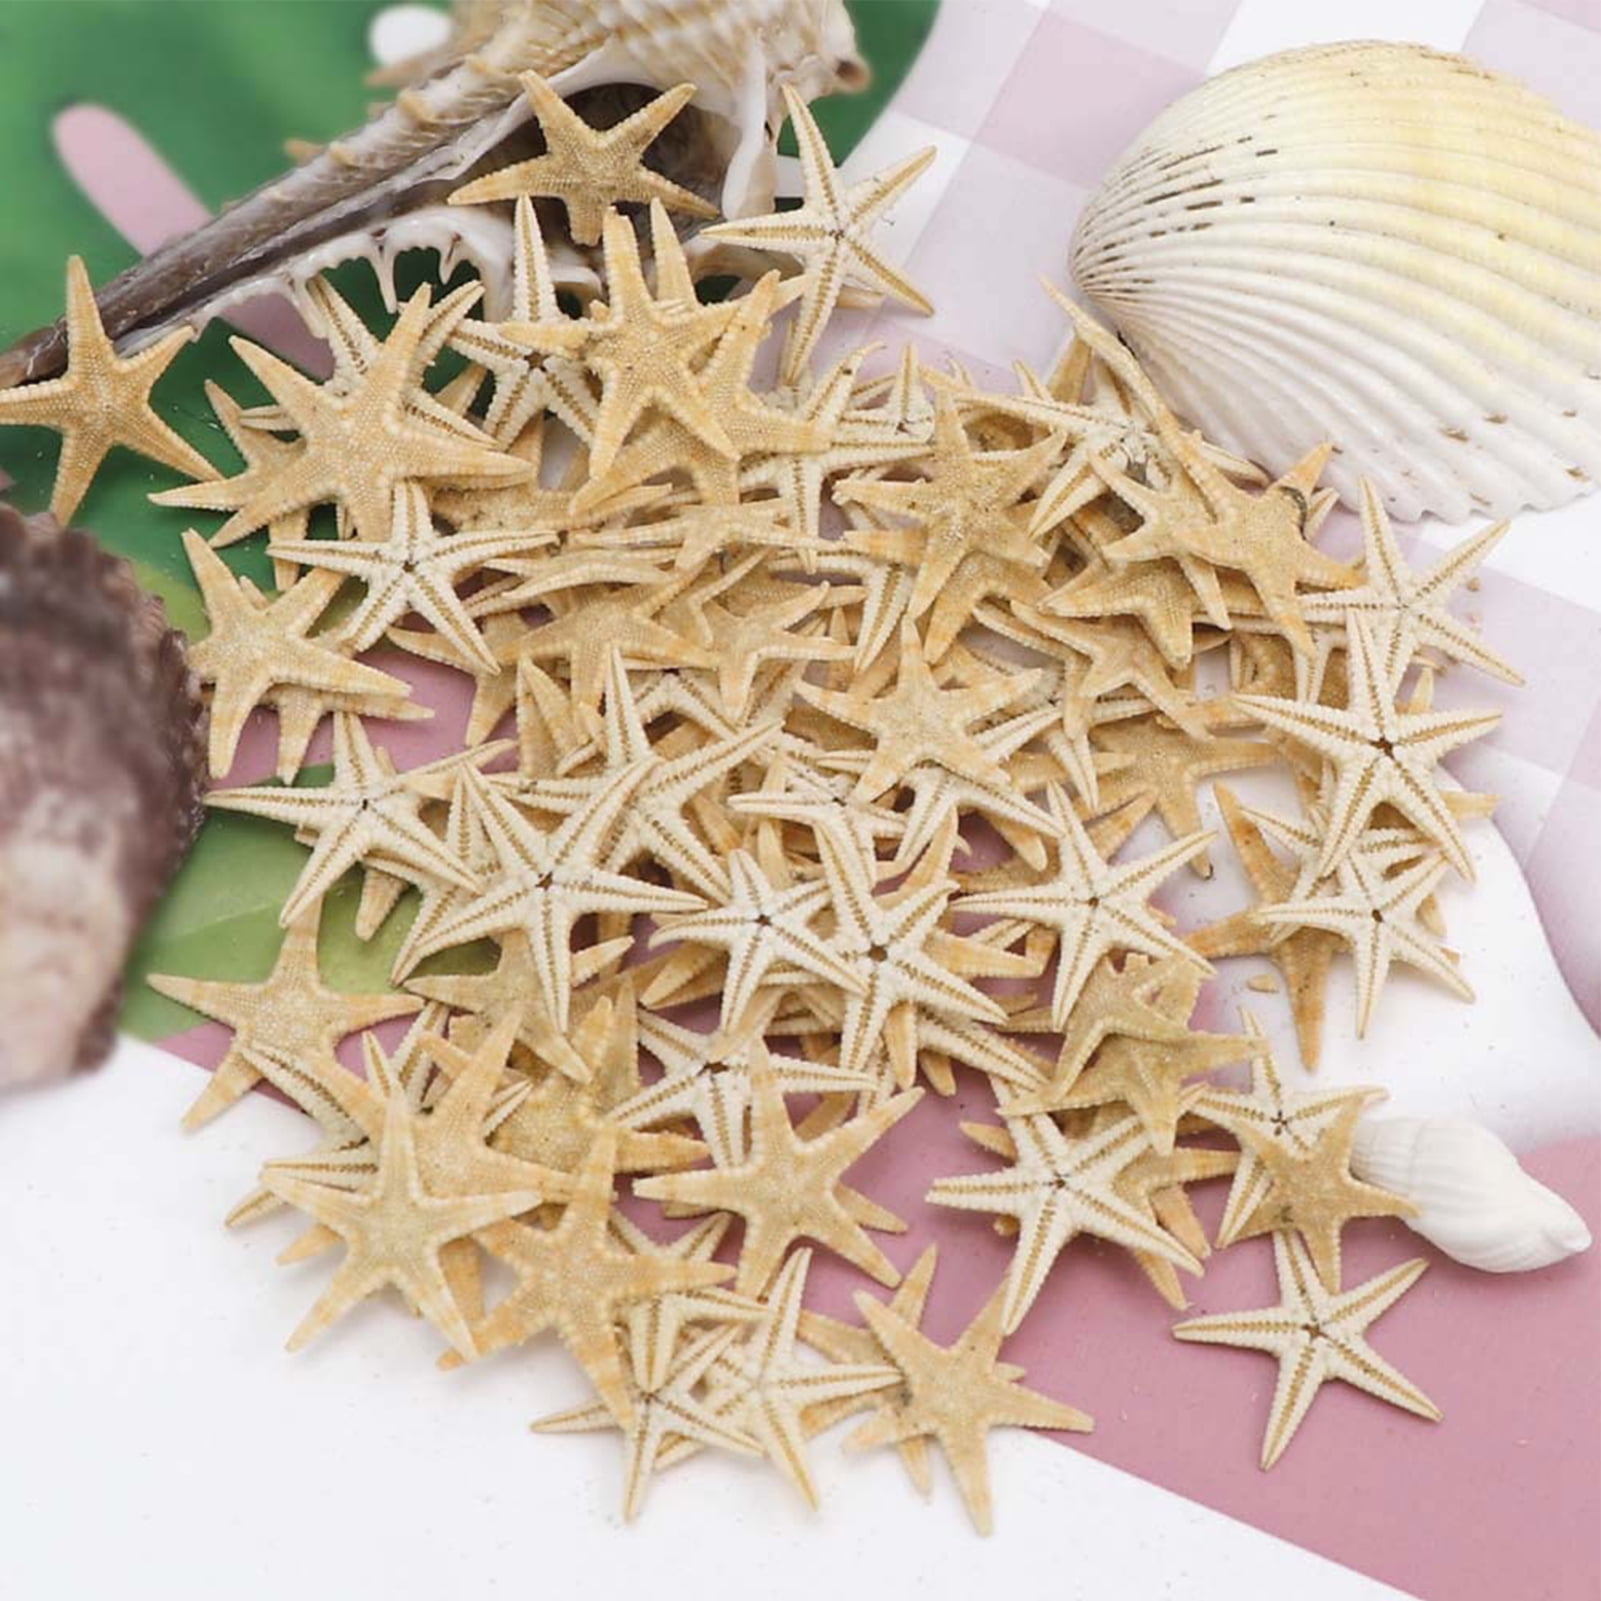 Yexpress 100 Pcs Small Starfish Sea Shell Beach Crafts Decor 0.4-1.2 